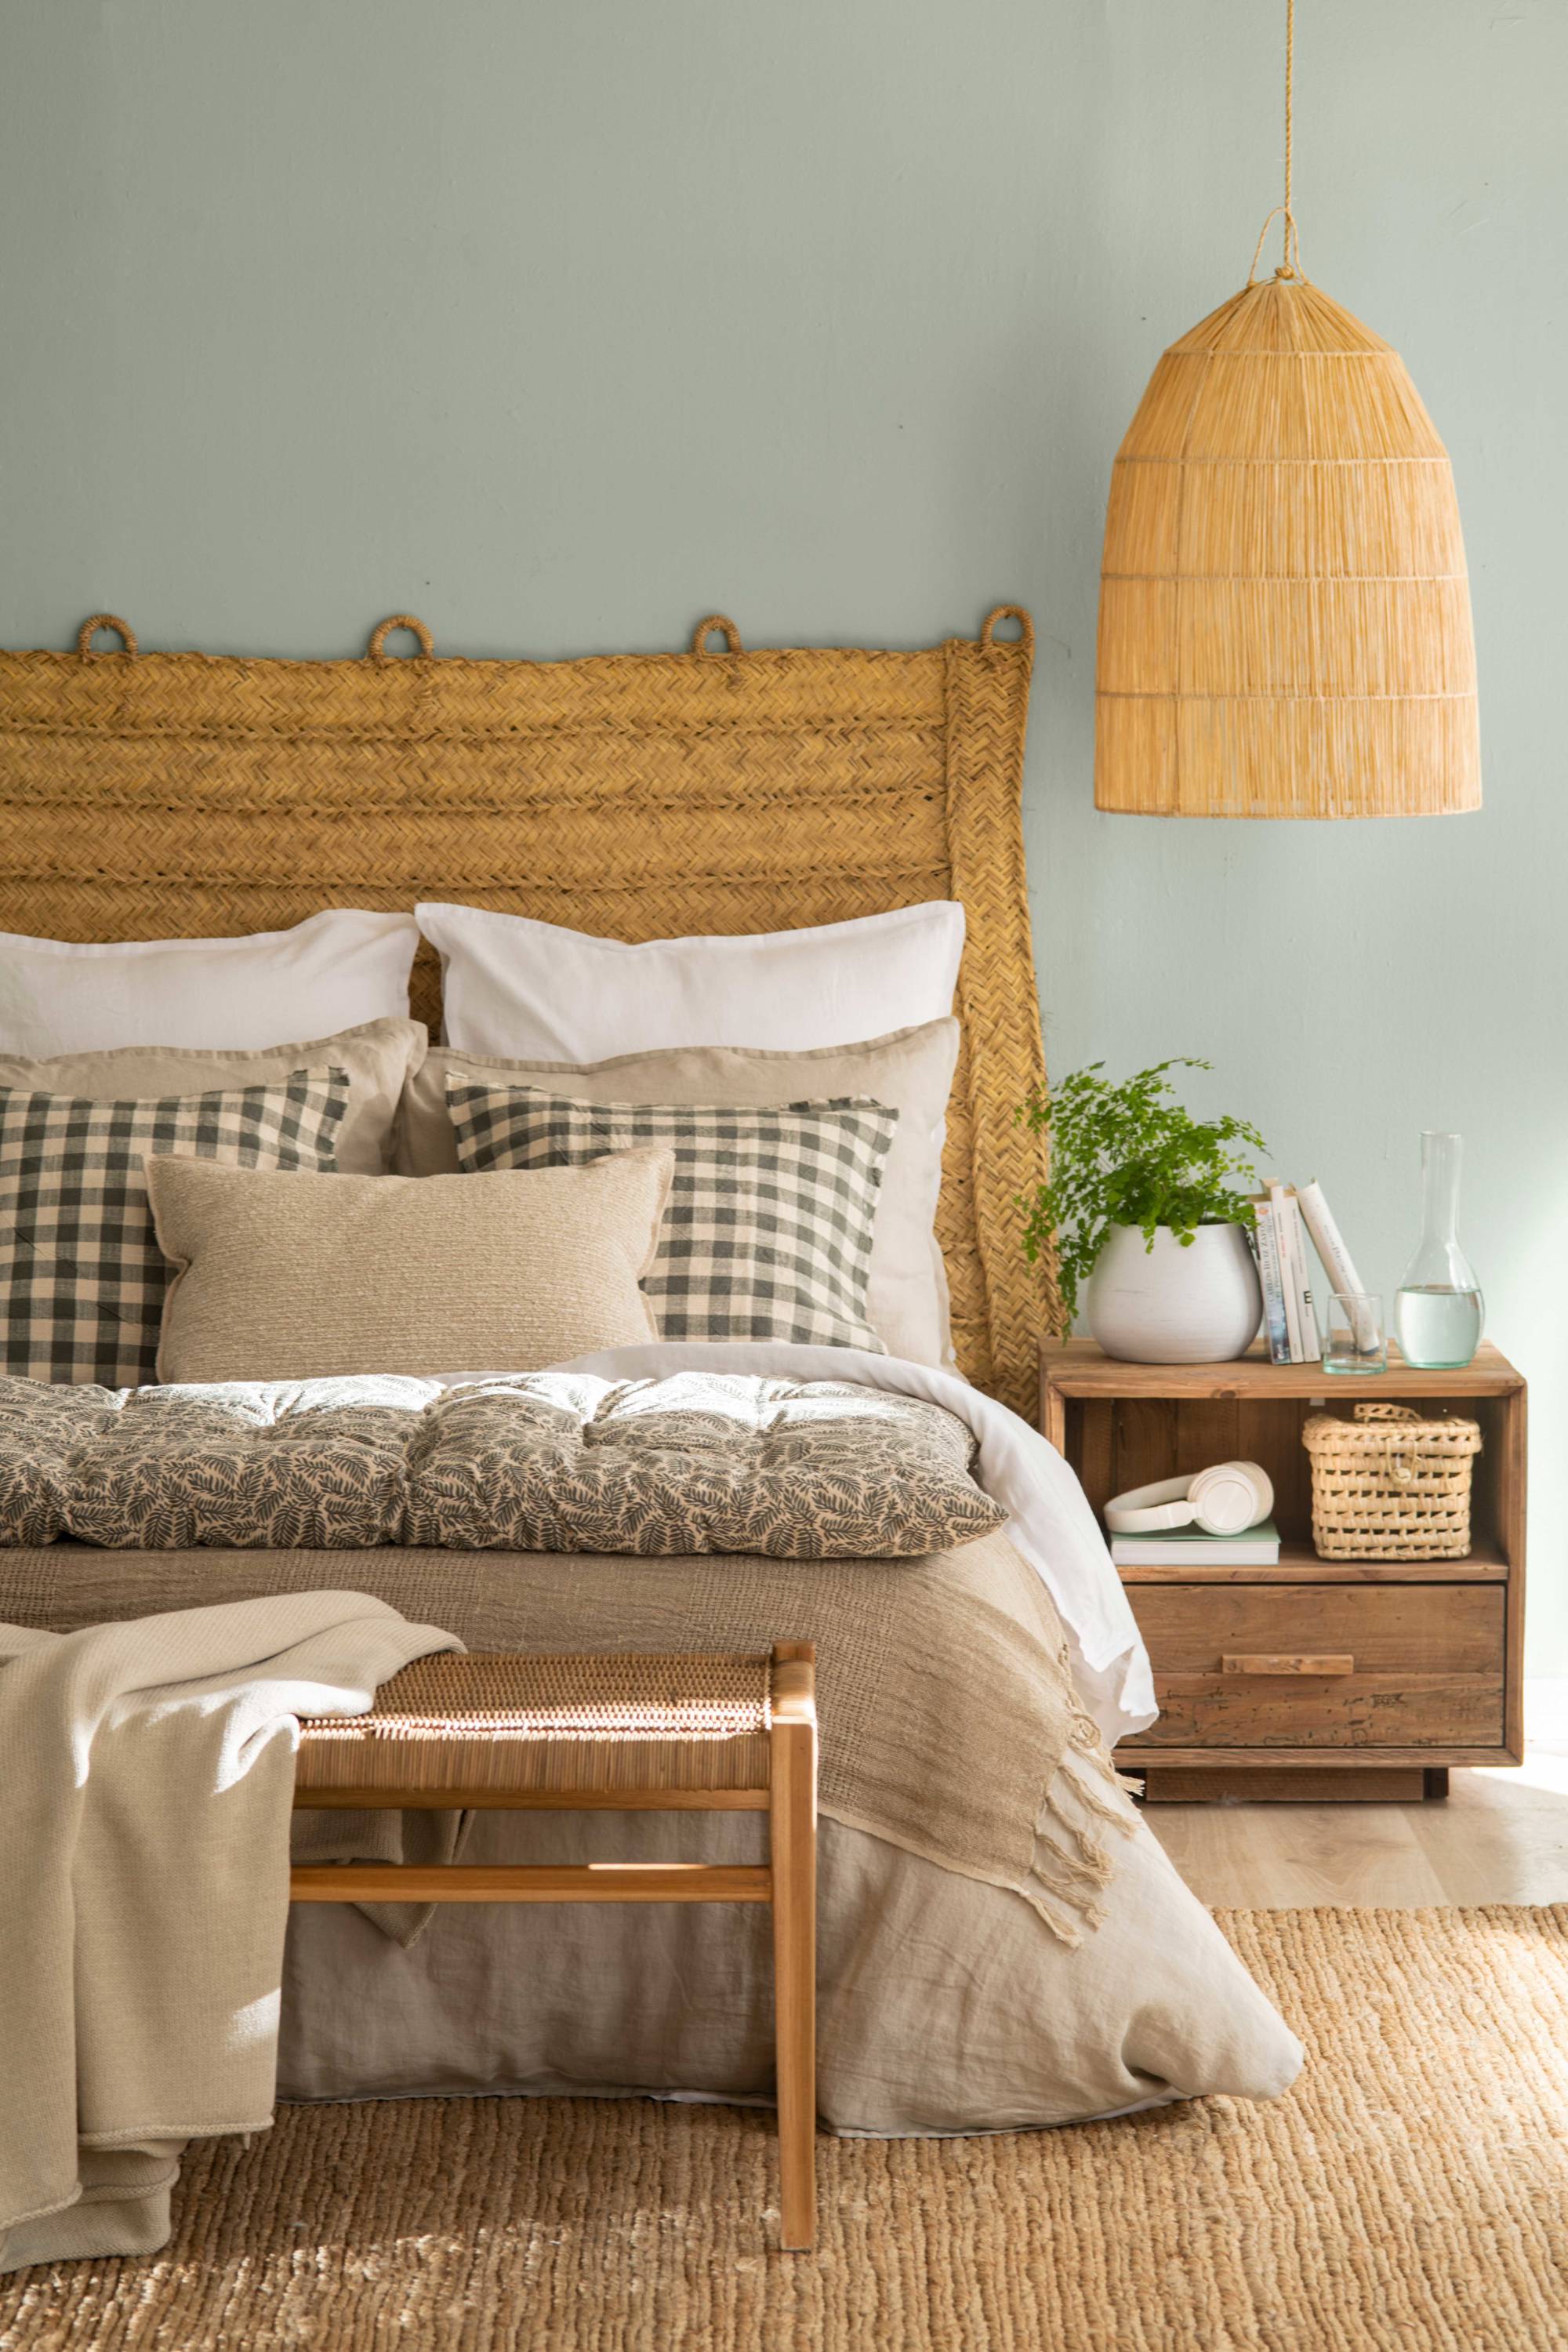 Dormitorio con cama de estilo natural y cabecero de fibra.